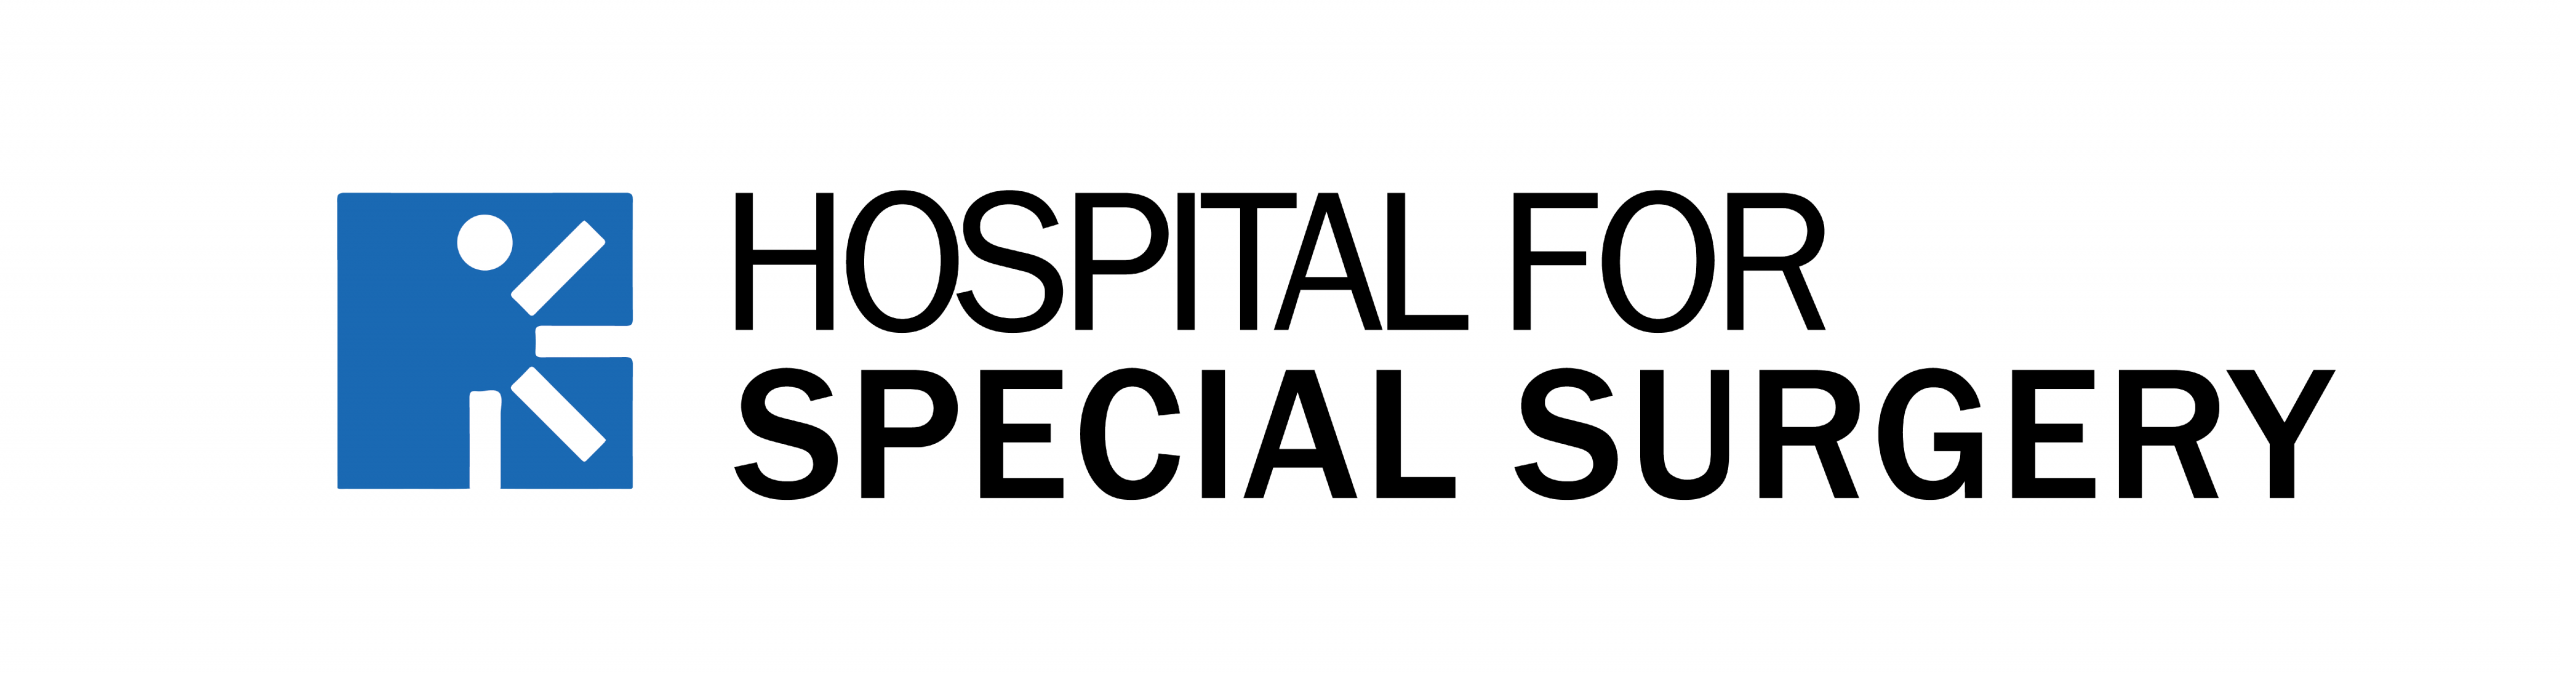 Hospital for Special Surgery logo.